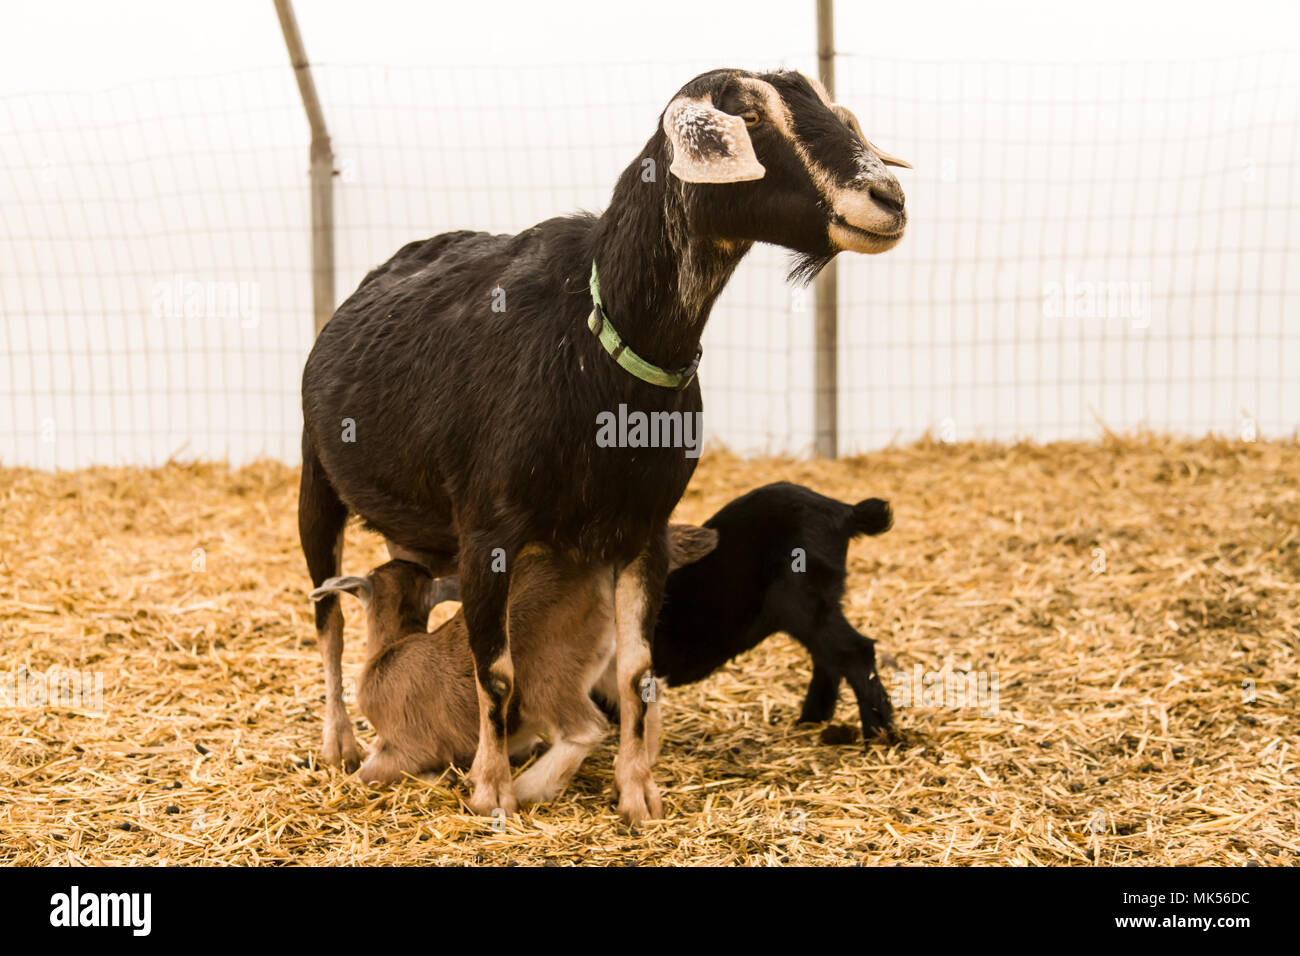 Oeillet, Washington, USA. Lait de chèvre mère d'allaiter son enfant dans un abri de chèvre. (PR) Banque D'Images